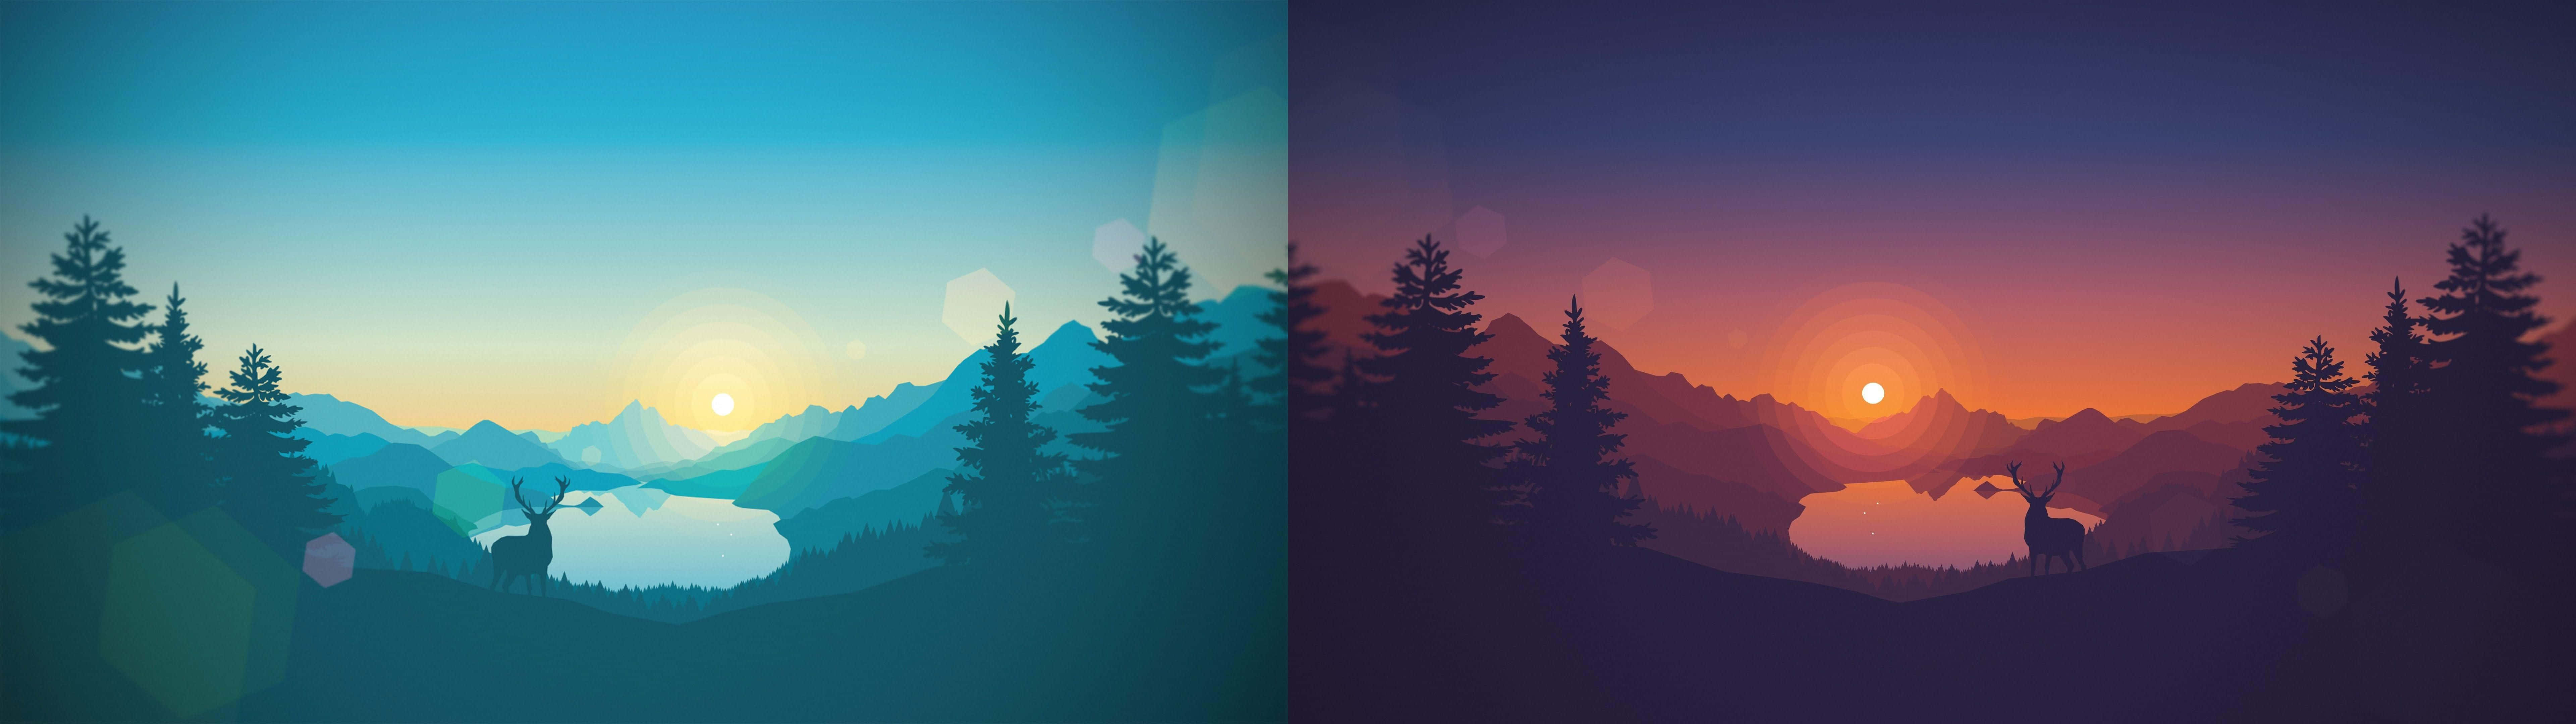 Zweiverschiedene Bilder Eines Sonnenuntergangs Mit Bäumen Und Bergen Wallpaper